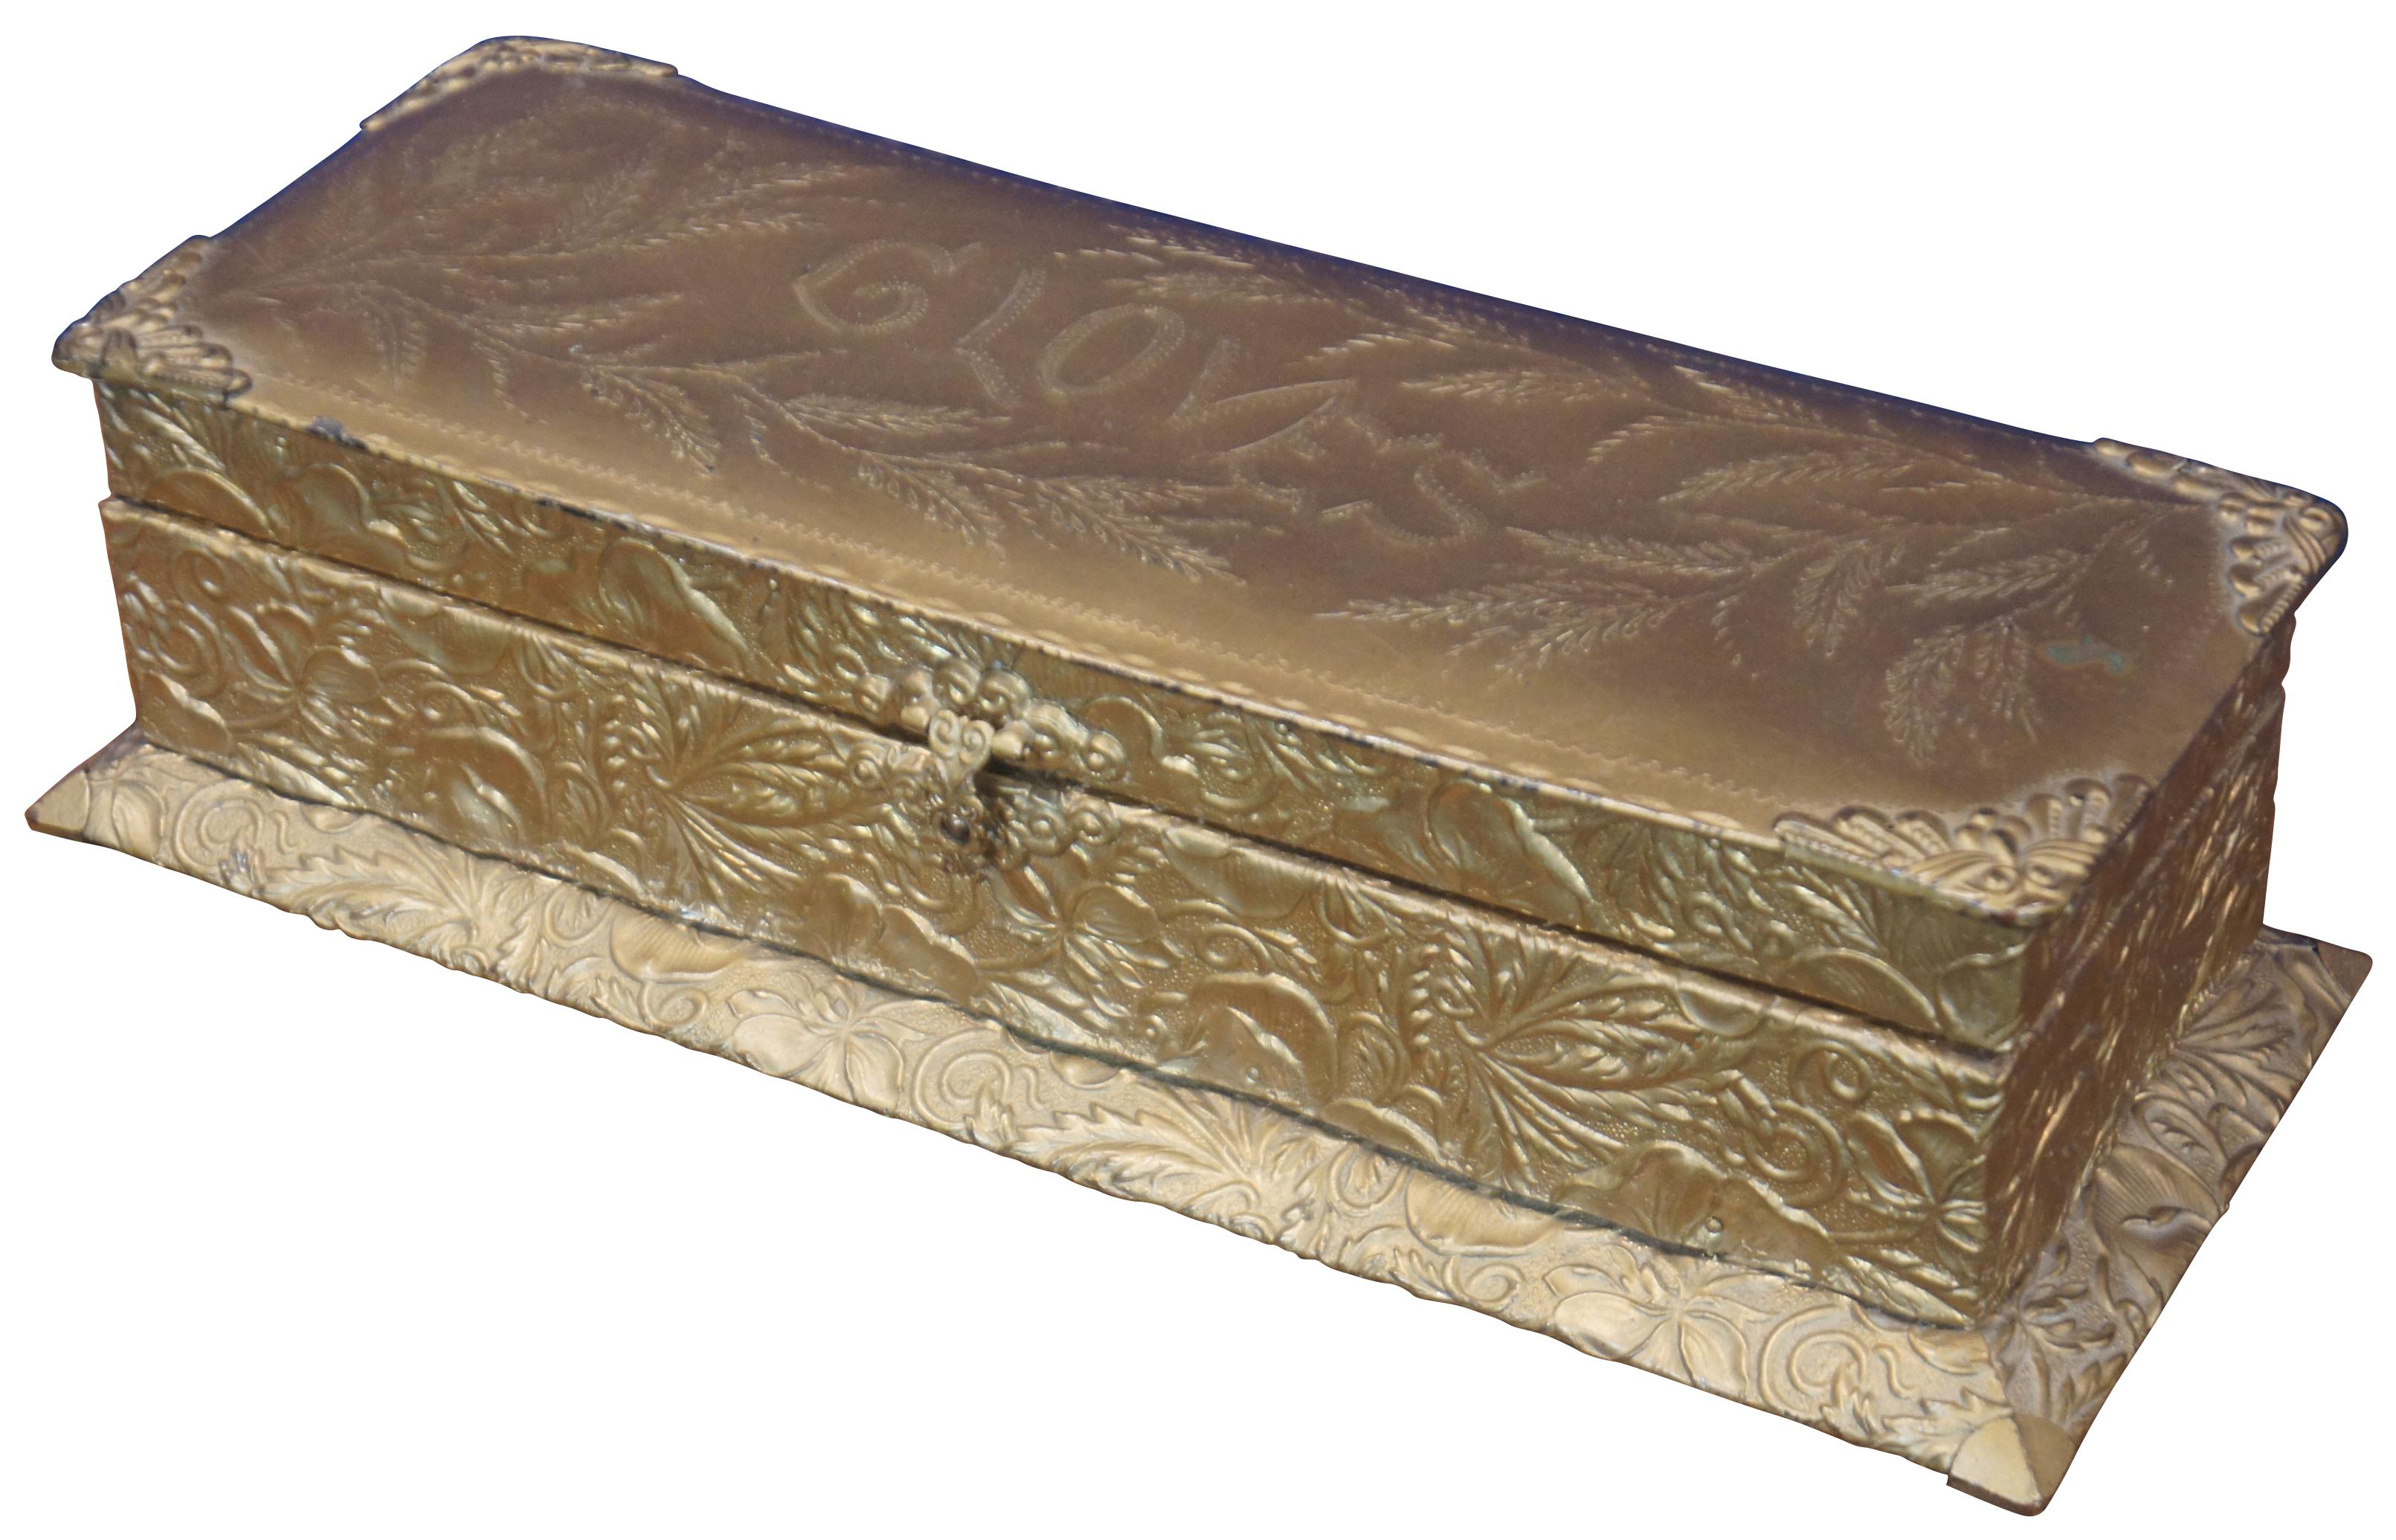 Antiguo guantero, cofre, caja de recuerdos o joyero victoriano J&S de madera revestida de metal repujado acabado en esmalte de tono dorado con un fino forro de terciopelo naranja. Medidas: 13